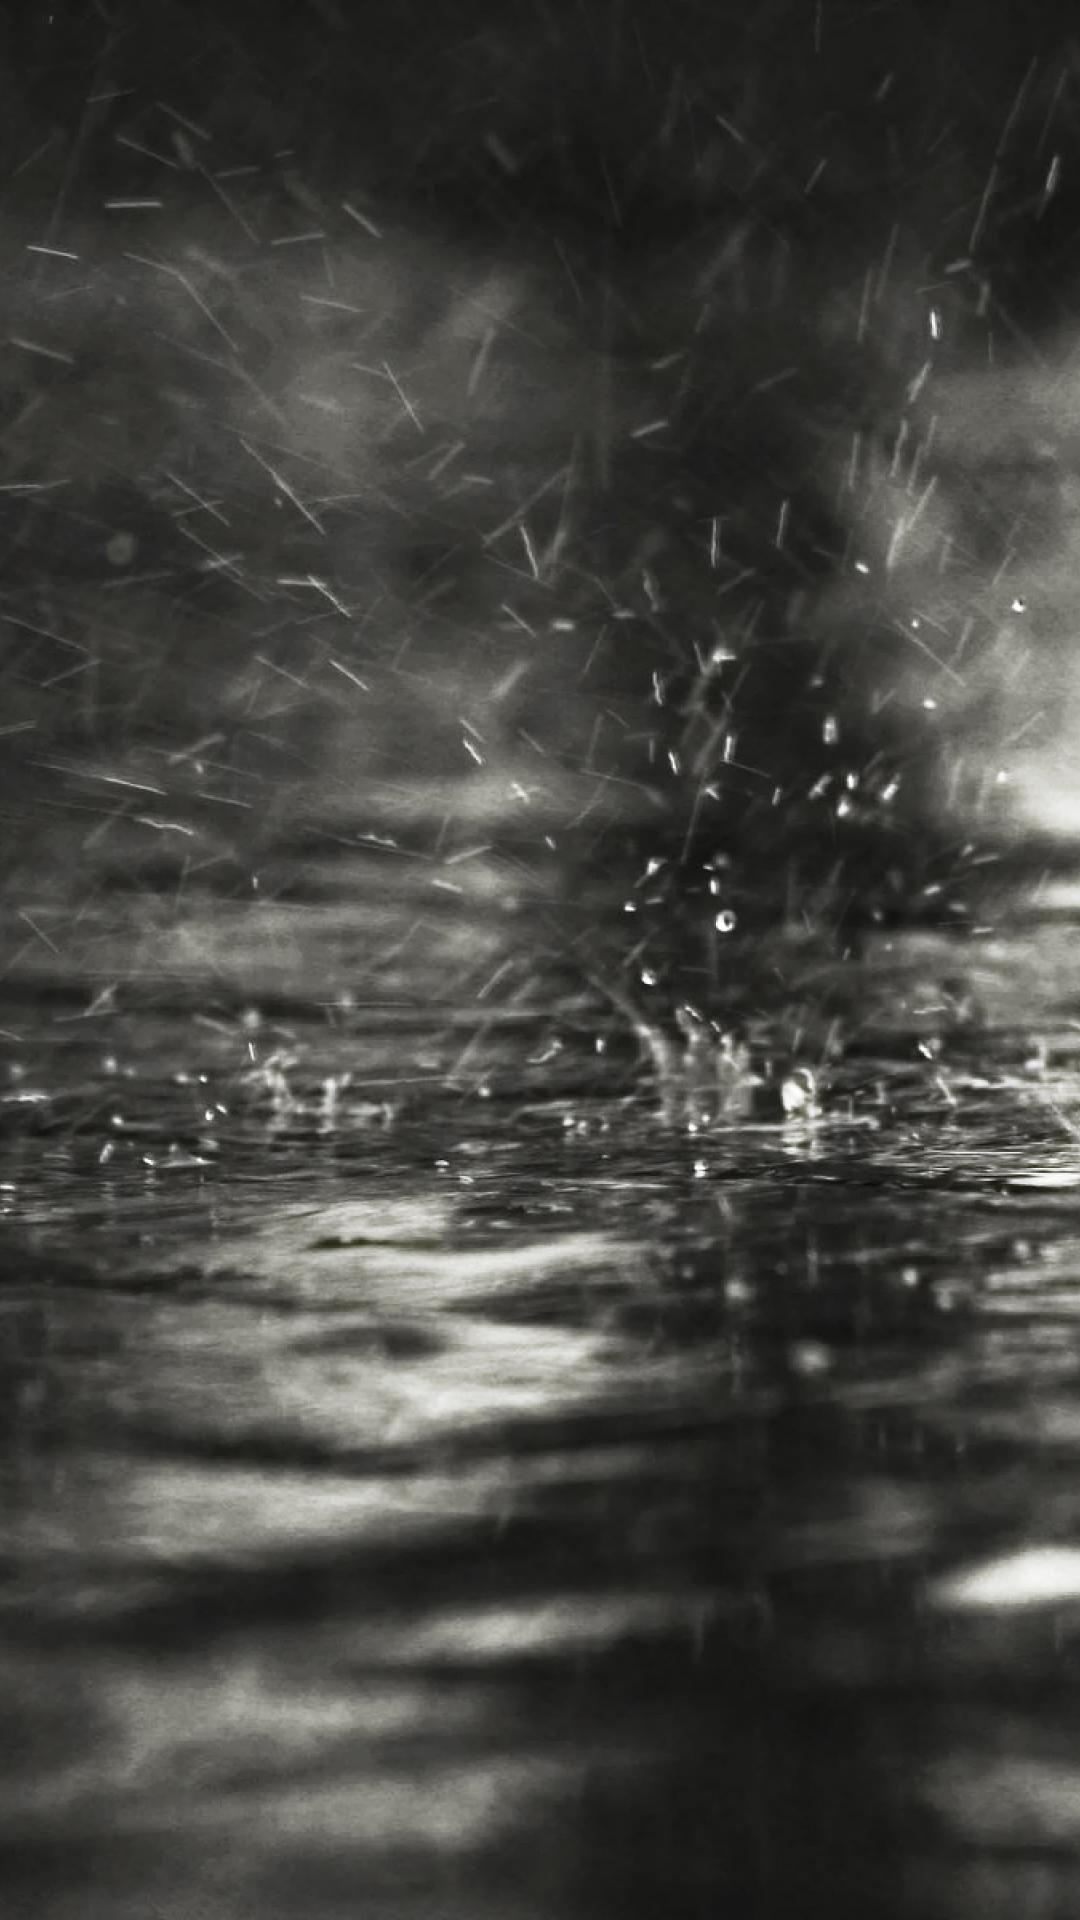 1080x1920 Nước mưa xám - Hình nền iPhone6